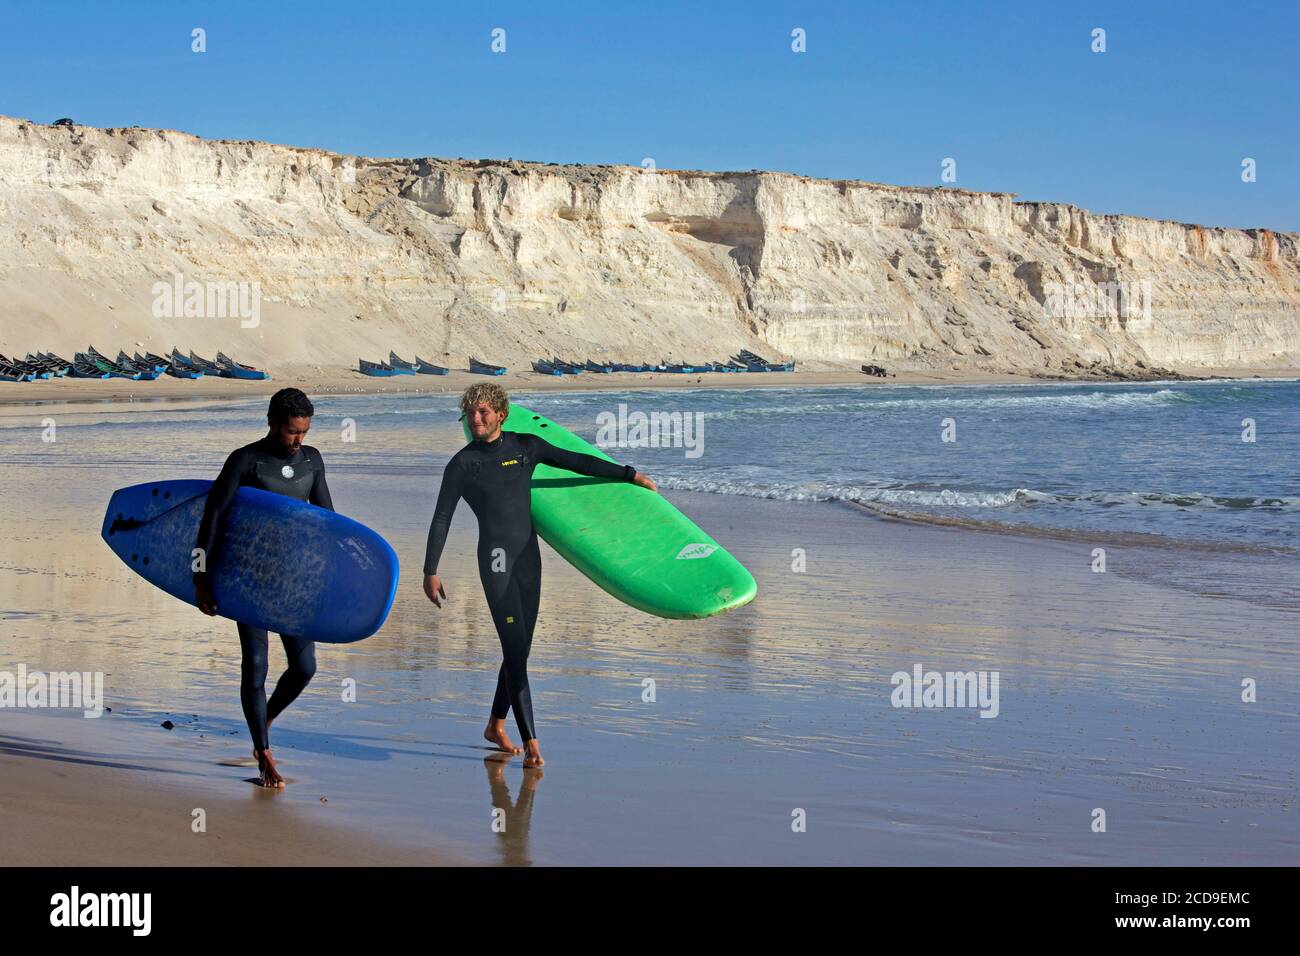 Marokko, Westsahara, Dakhla, zwei marokkanische Surfer mit ihren Brettern am Strand von Araiche, die von einer Klippe umgeben sind Stockfoto